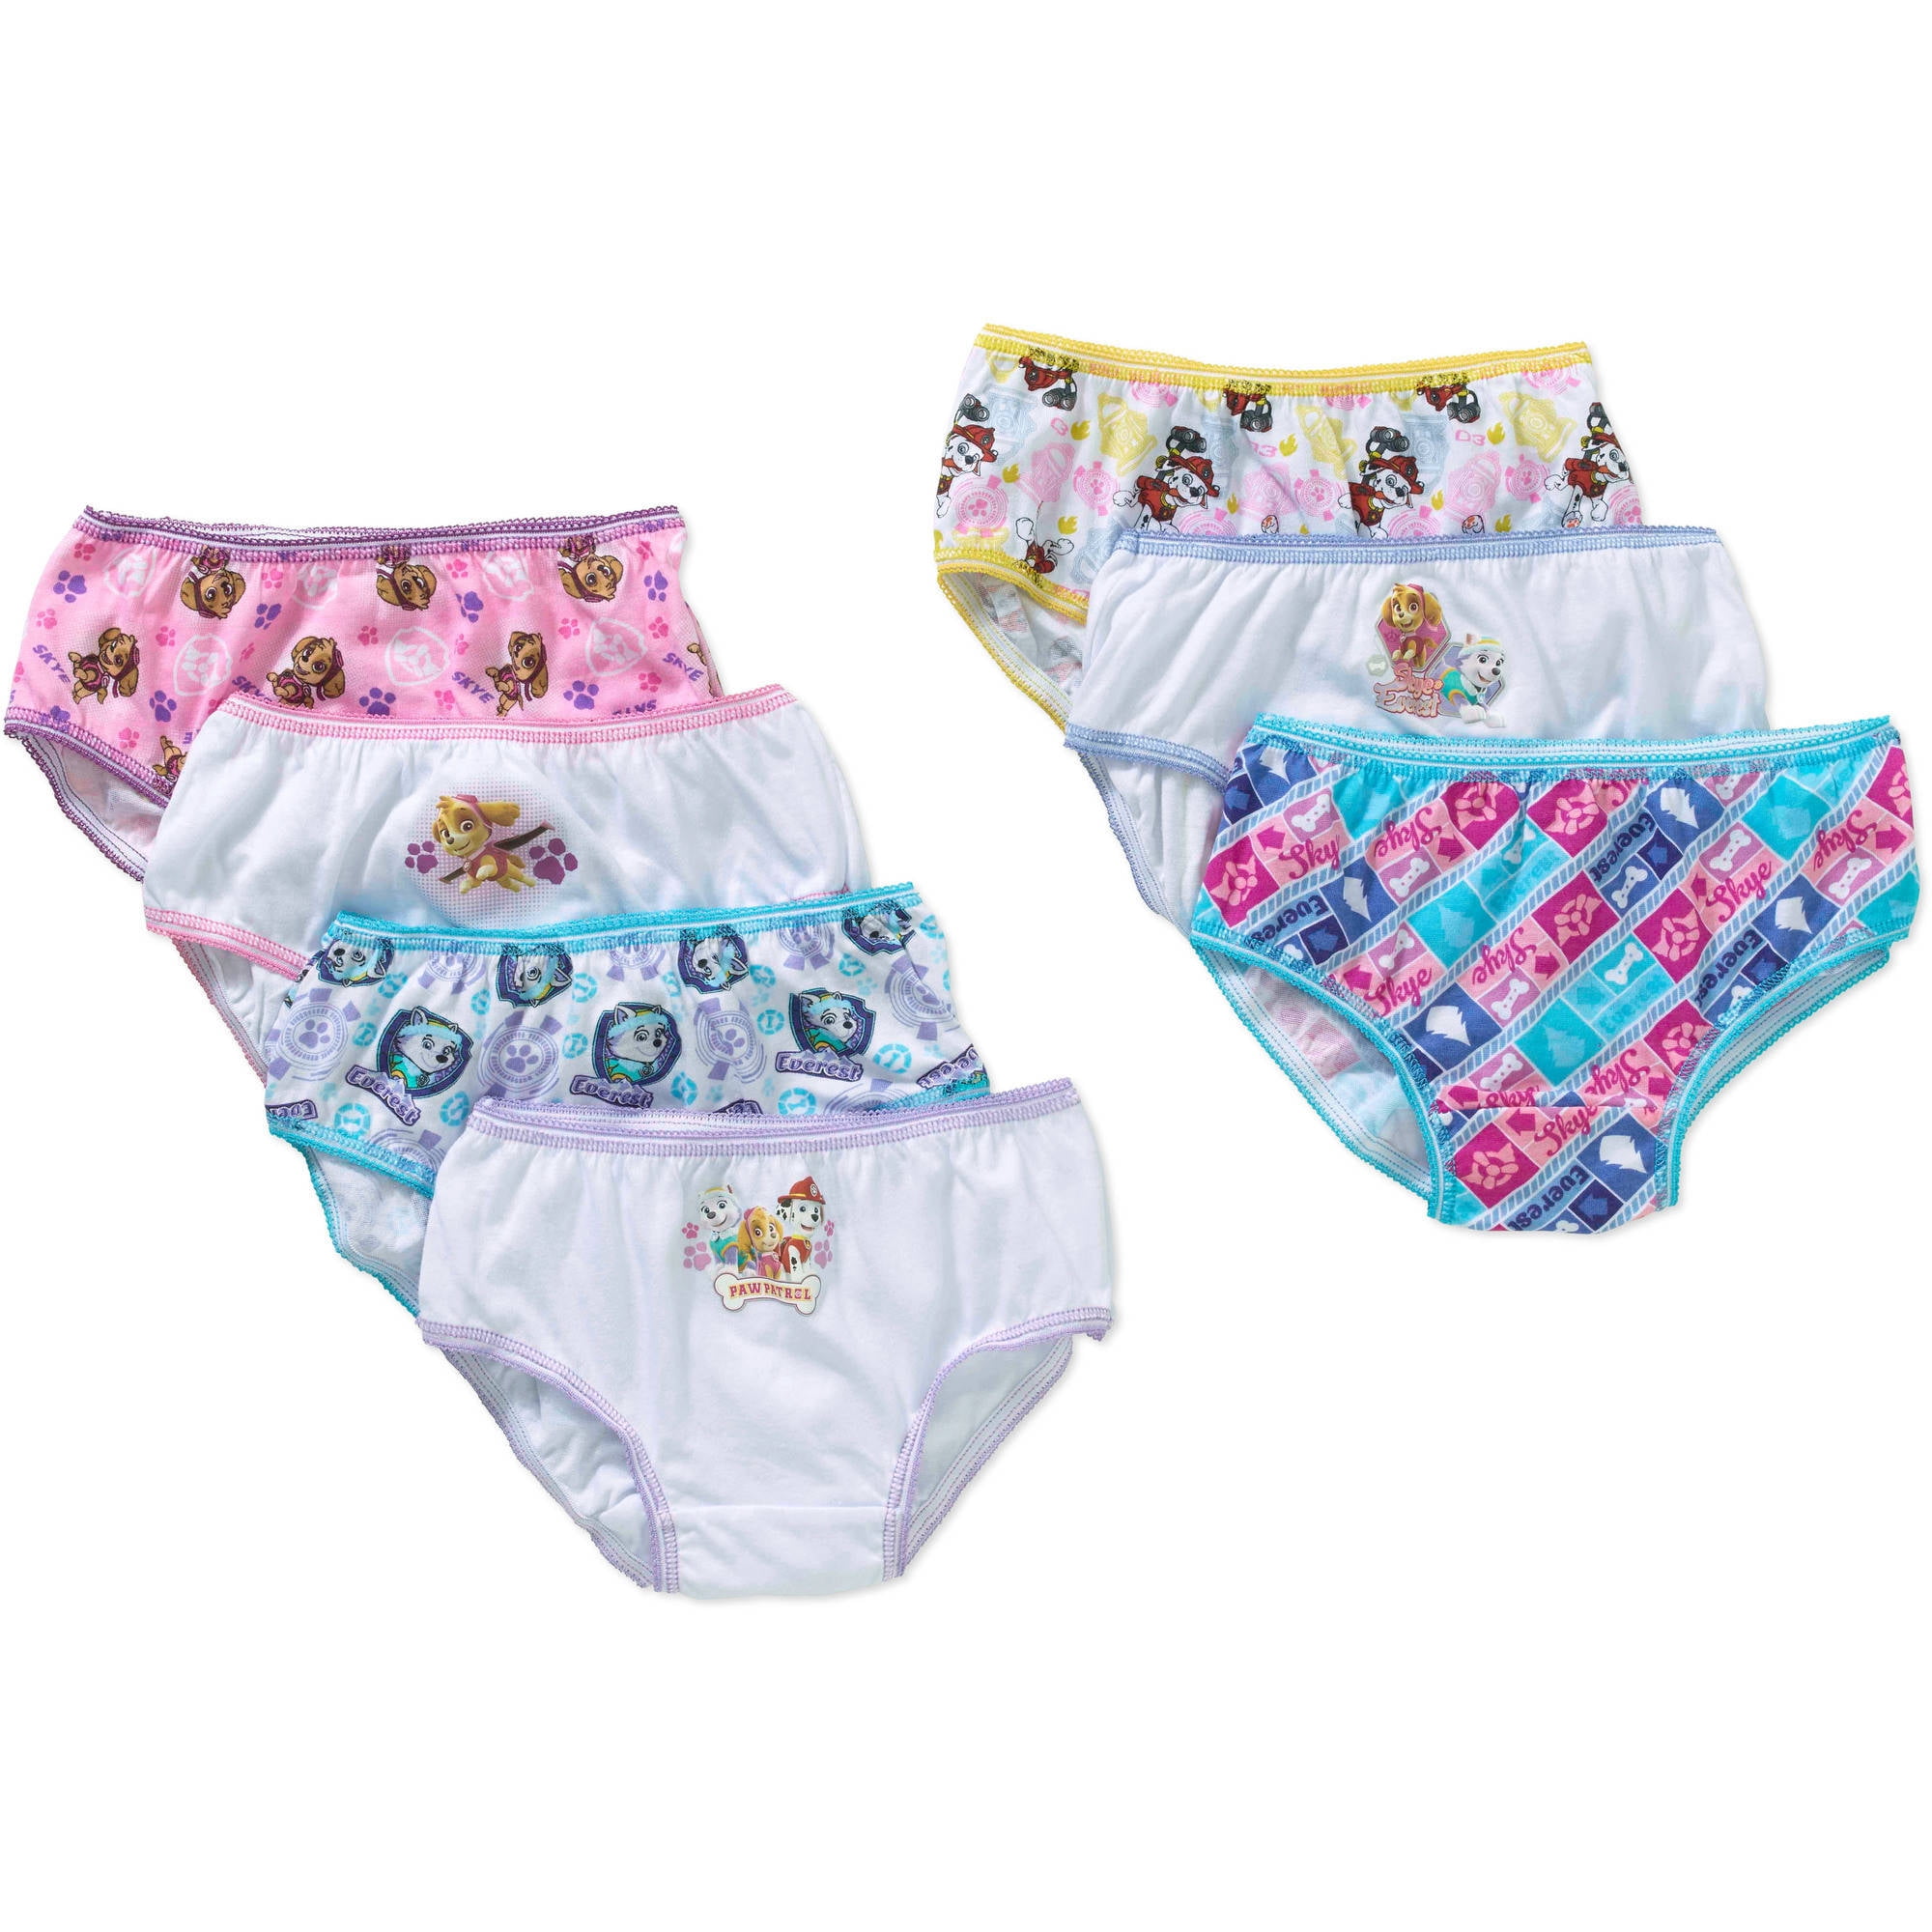 Paw Patrol Girls Underwear 7 Pack Briefs, Sizes 4-8 Algeria